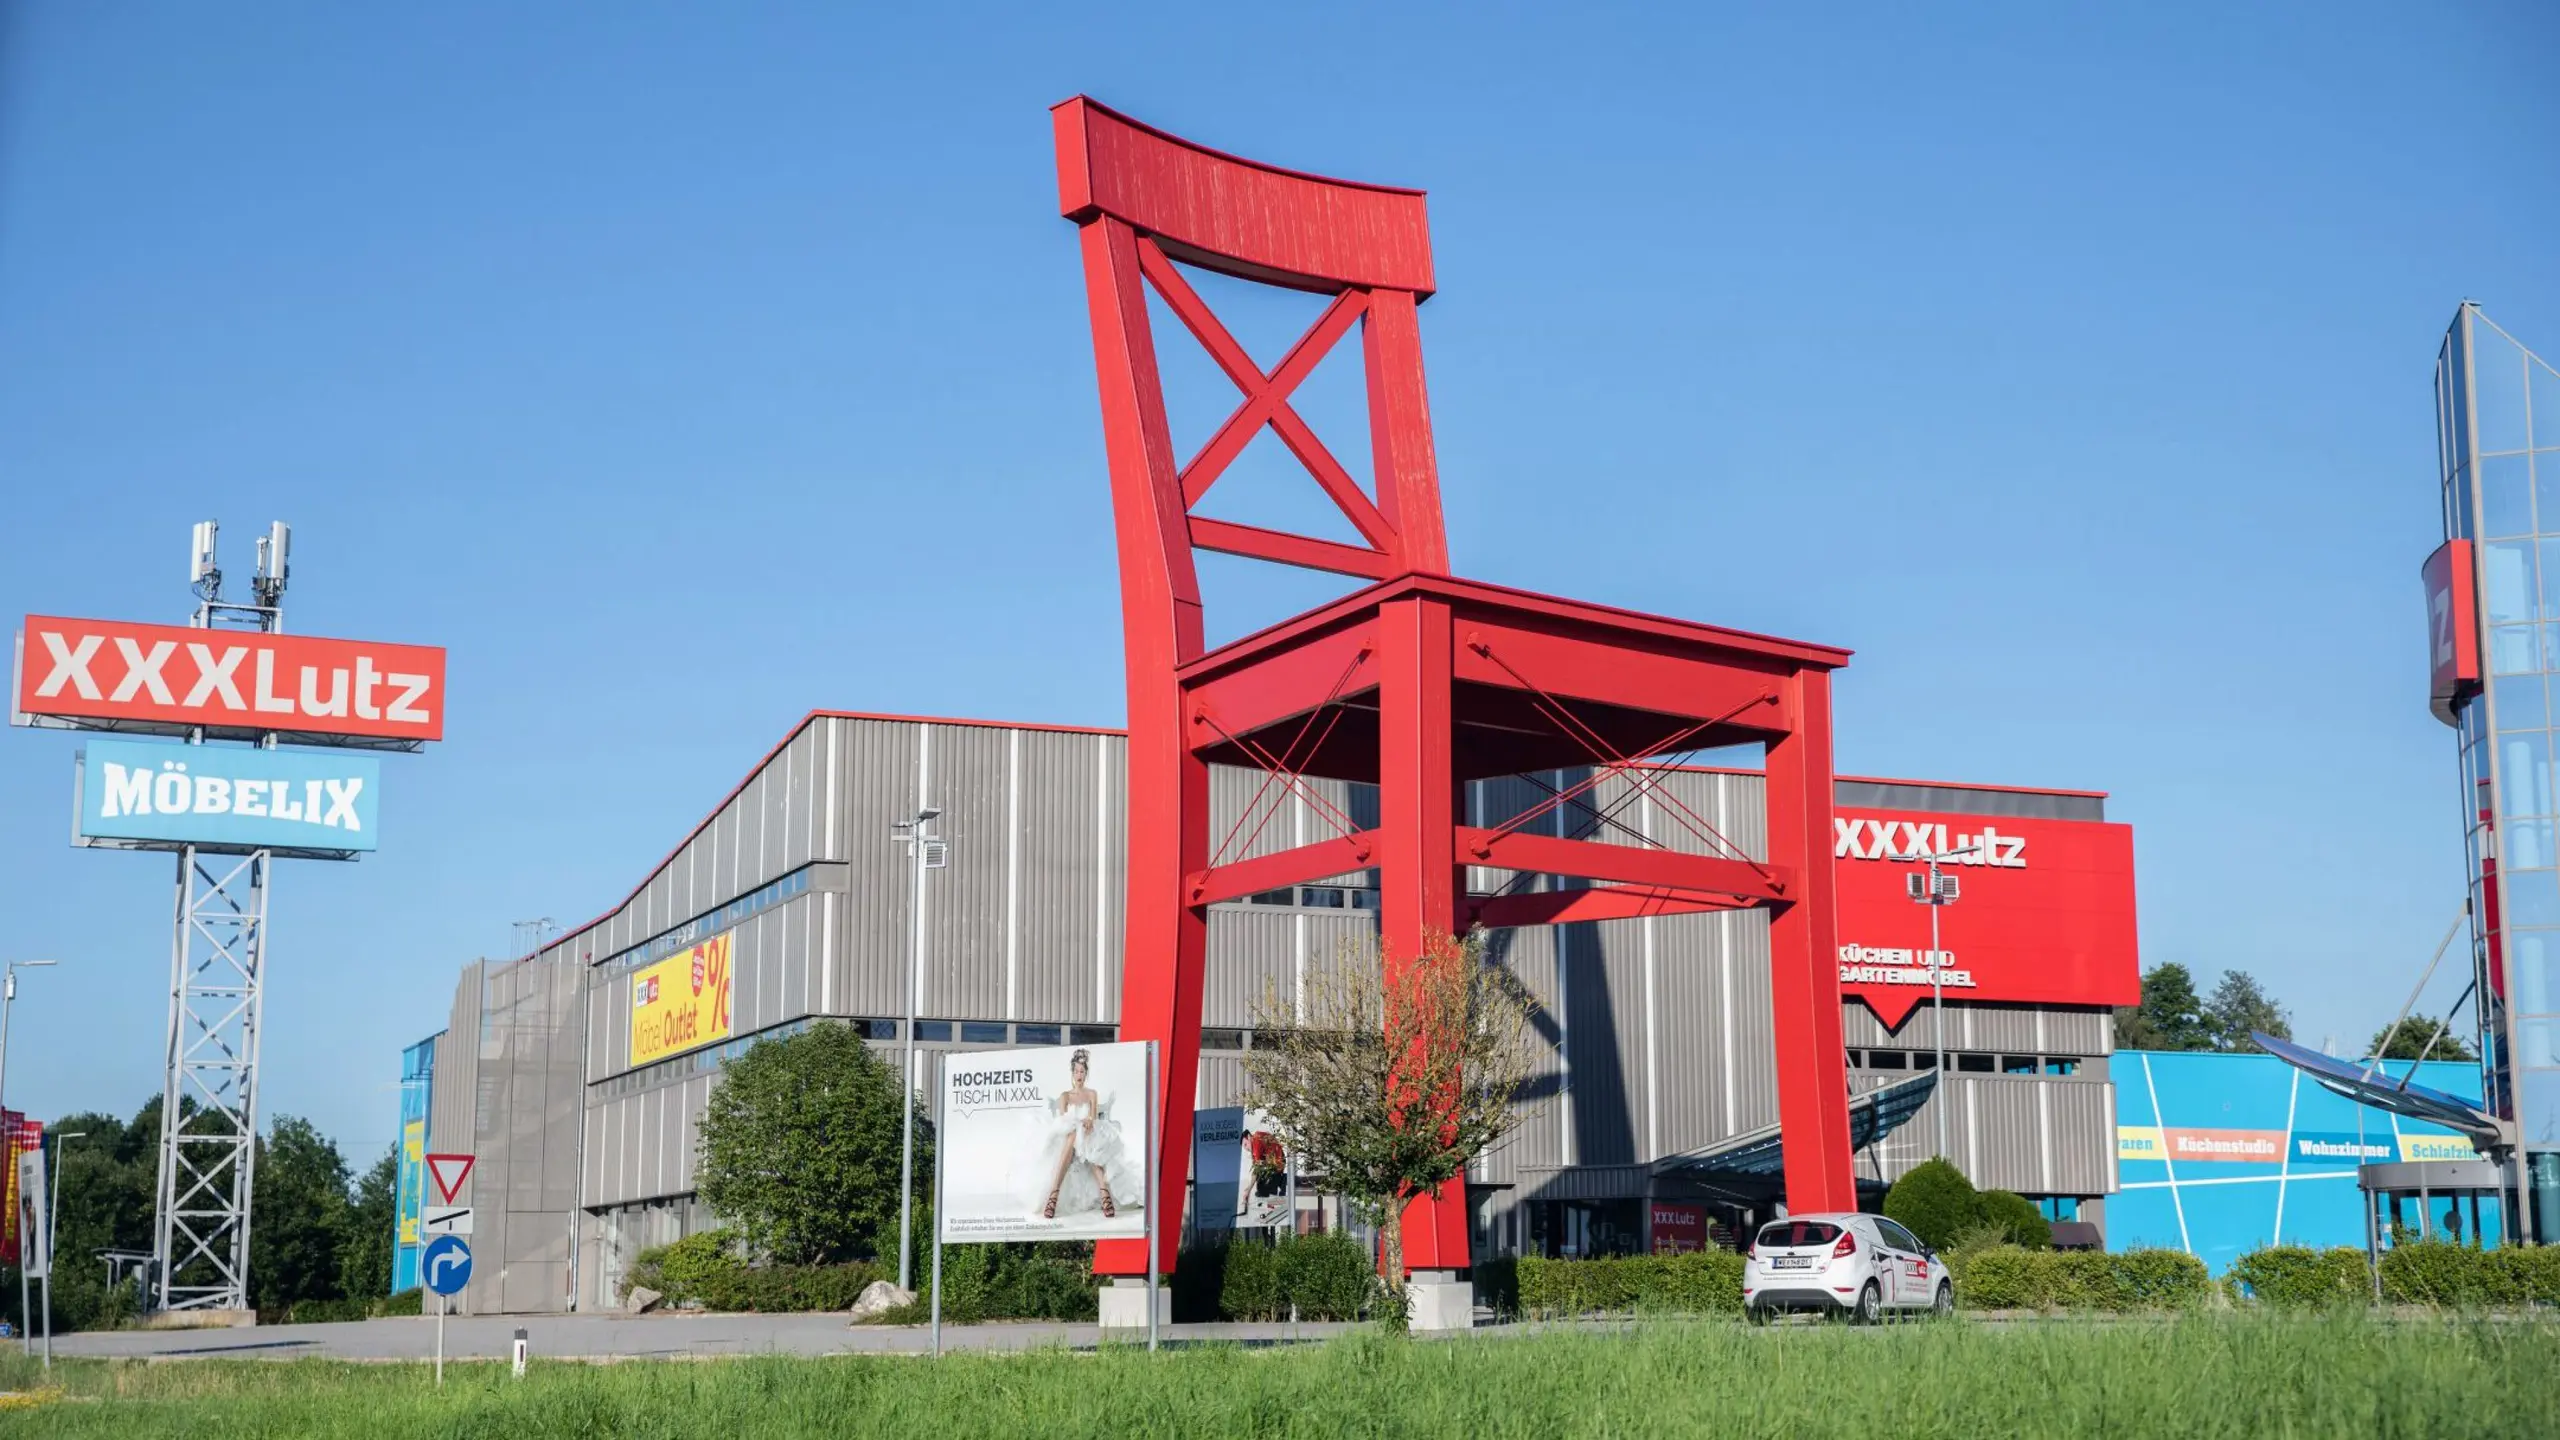 Die XXXL-Gruppe ist mit den Marken XXXLutz, Mömax und Möbelix der größte Möbelhändler Österreichs und einer der größten der Welt.